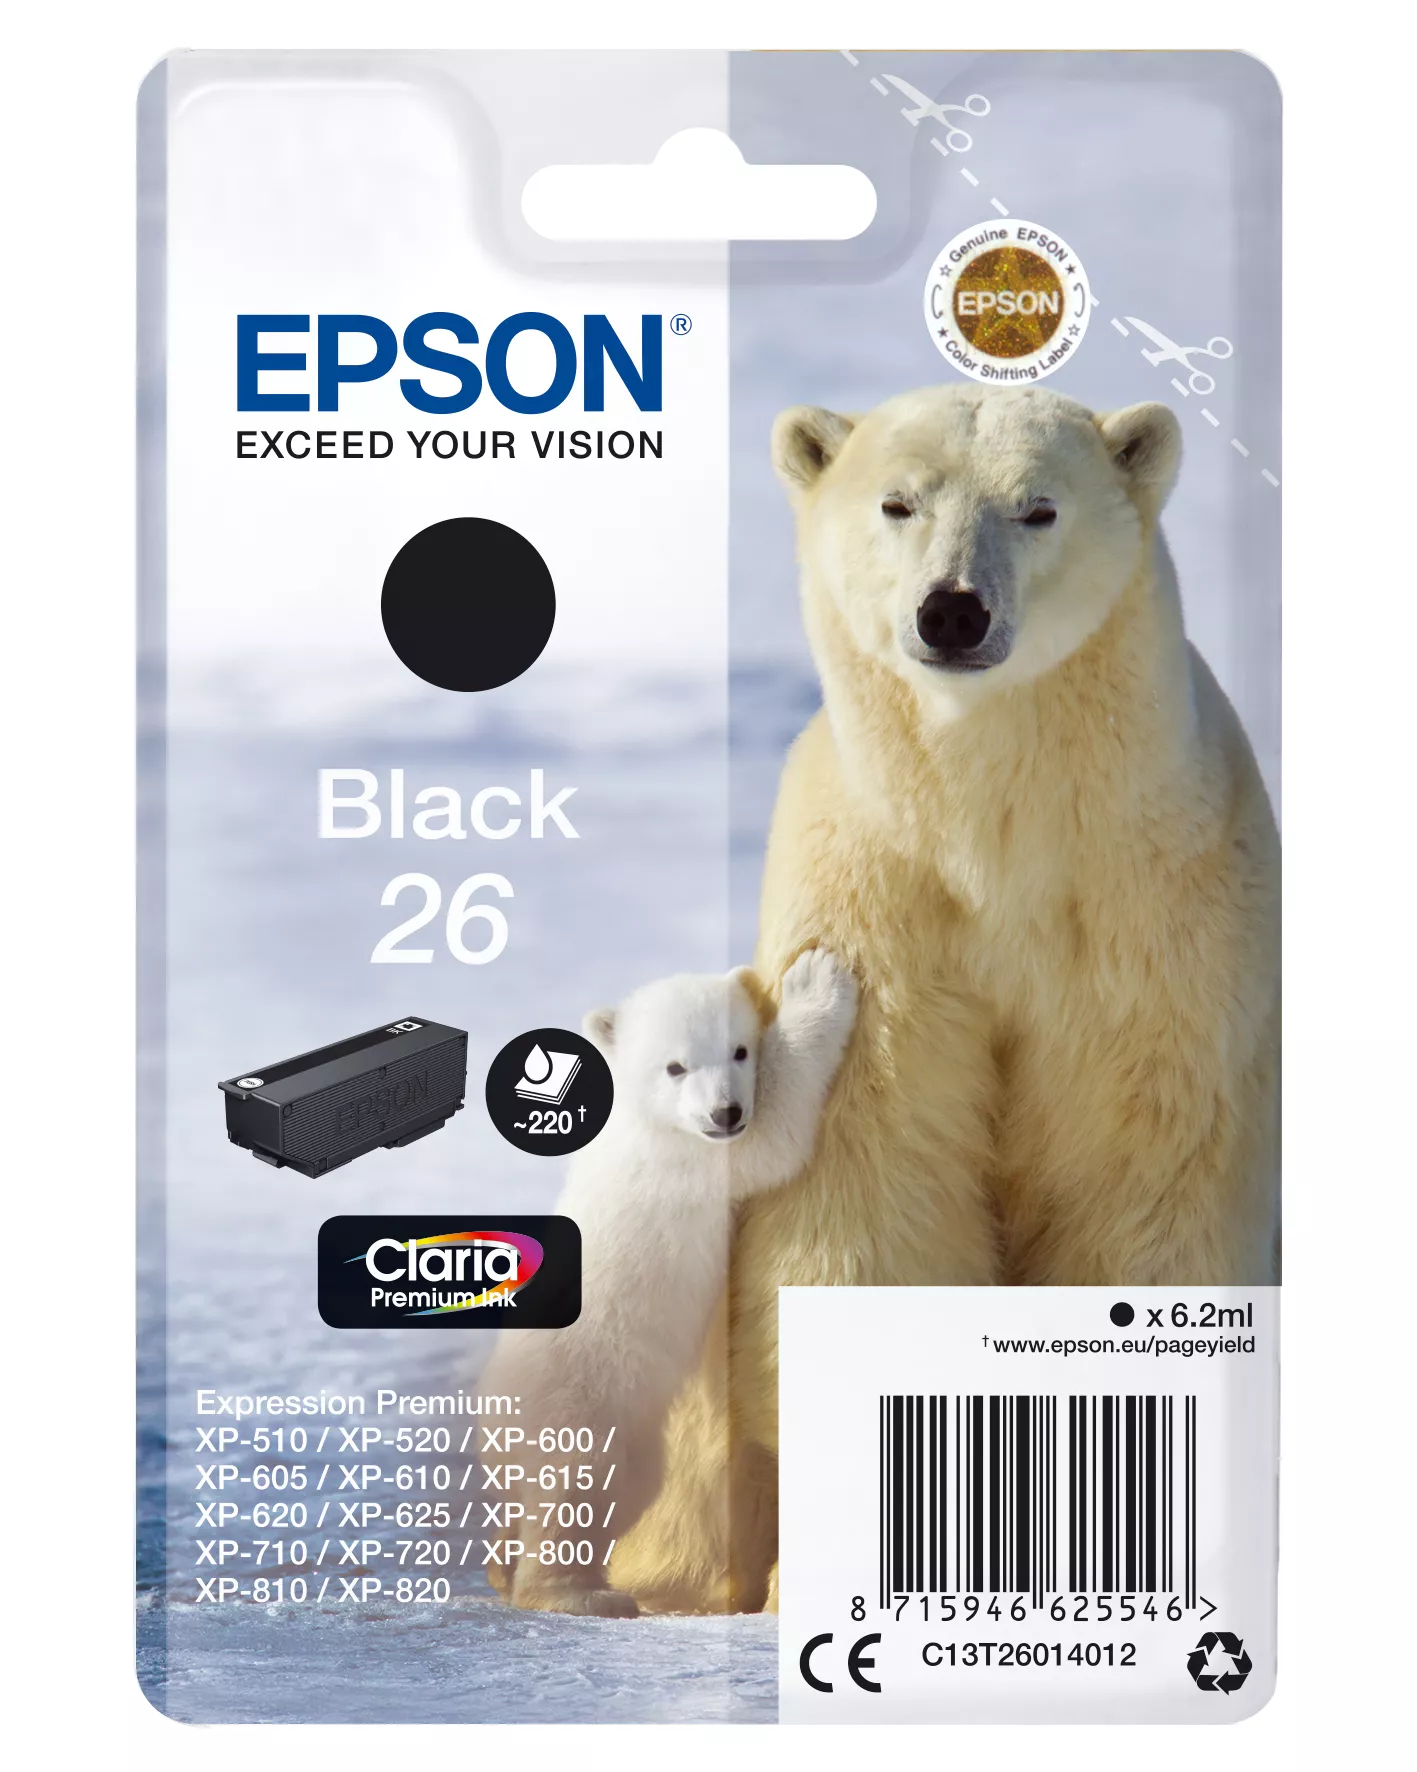 Achat EPSON 26 cartouche dencre noir capacité standard 6.2ml 220 au meilleur prix